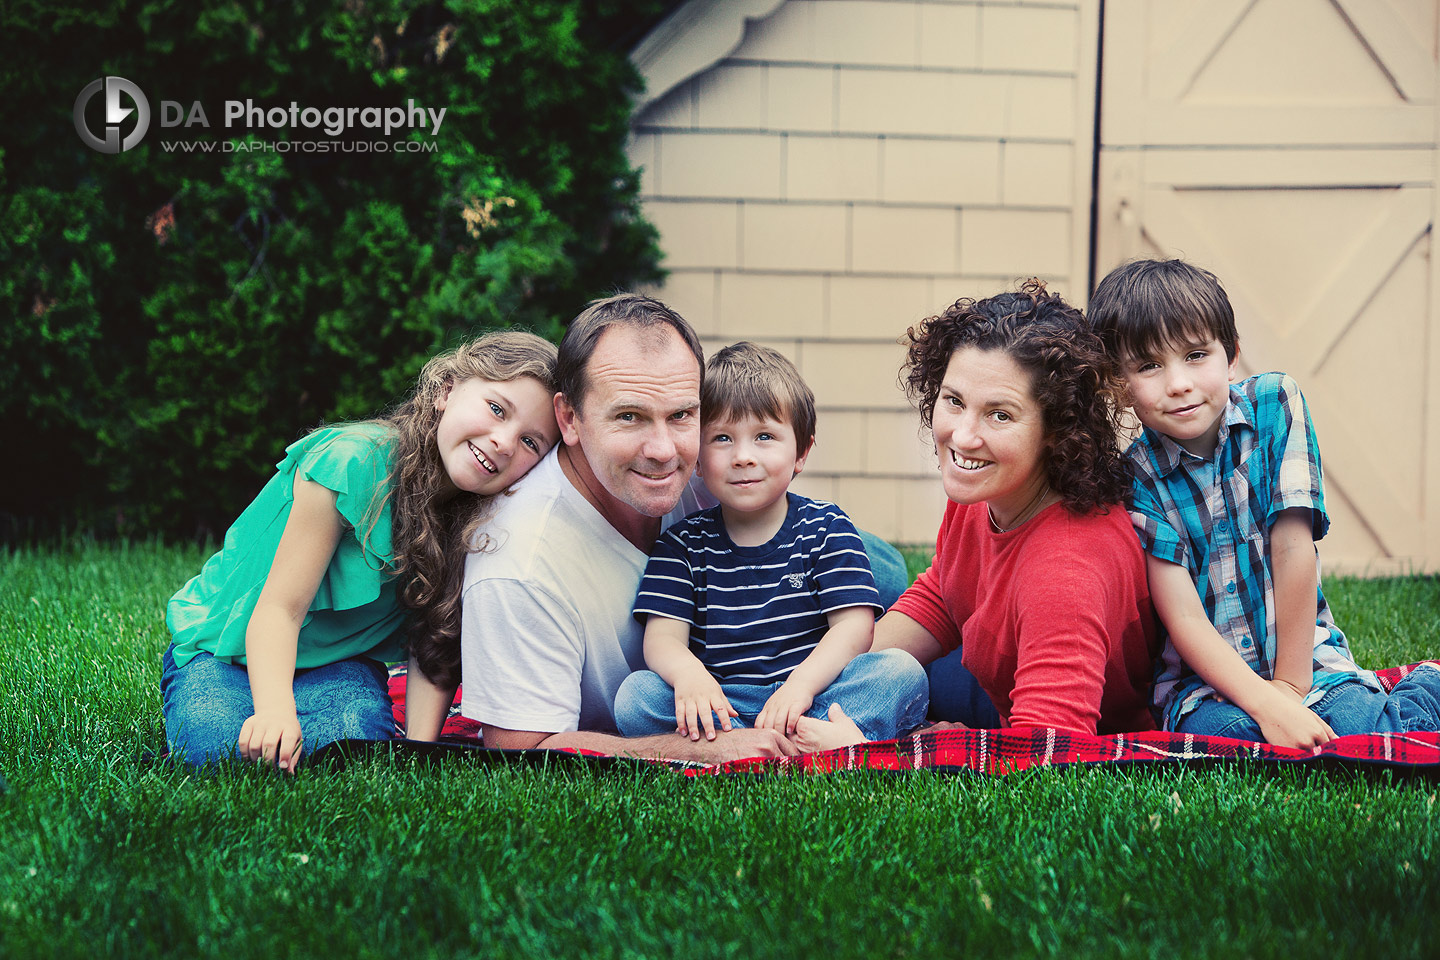 The Happy Family - Family Photography